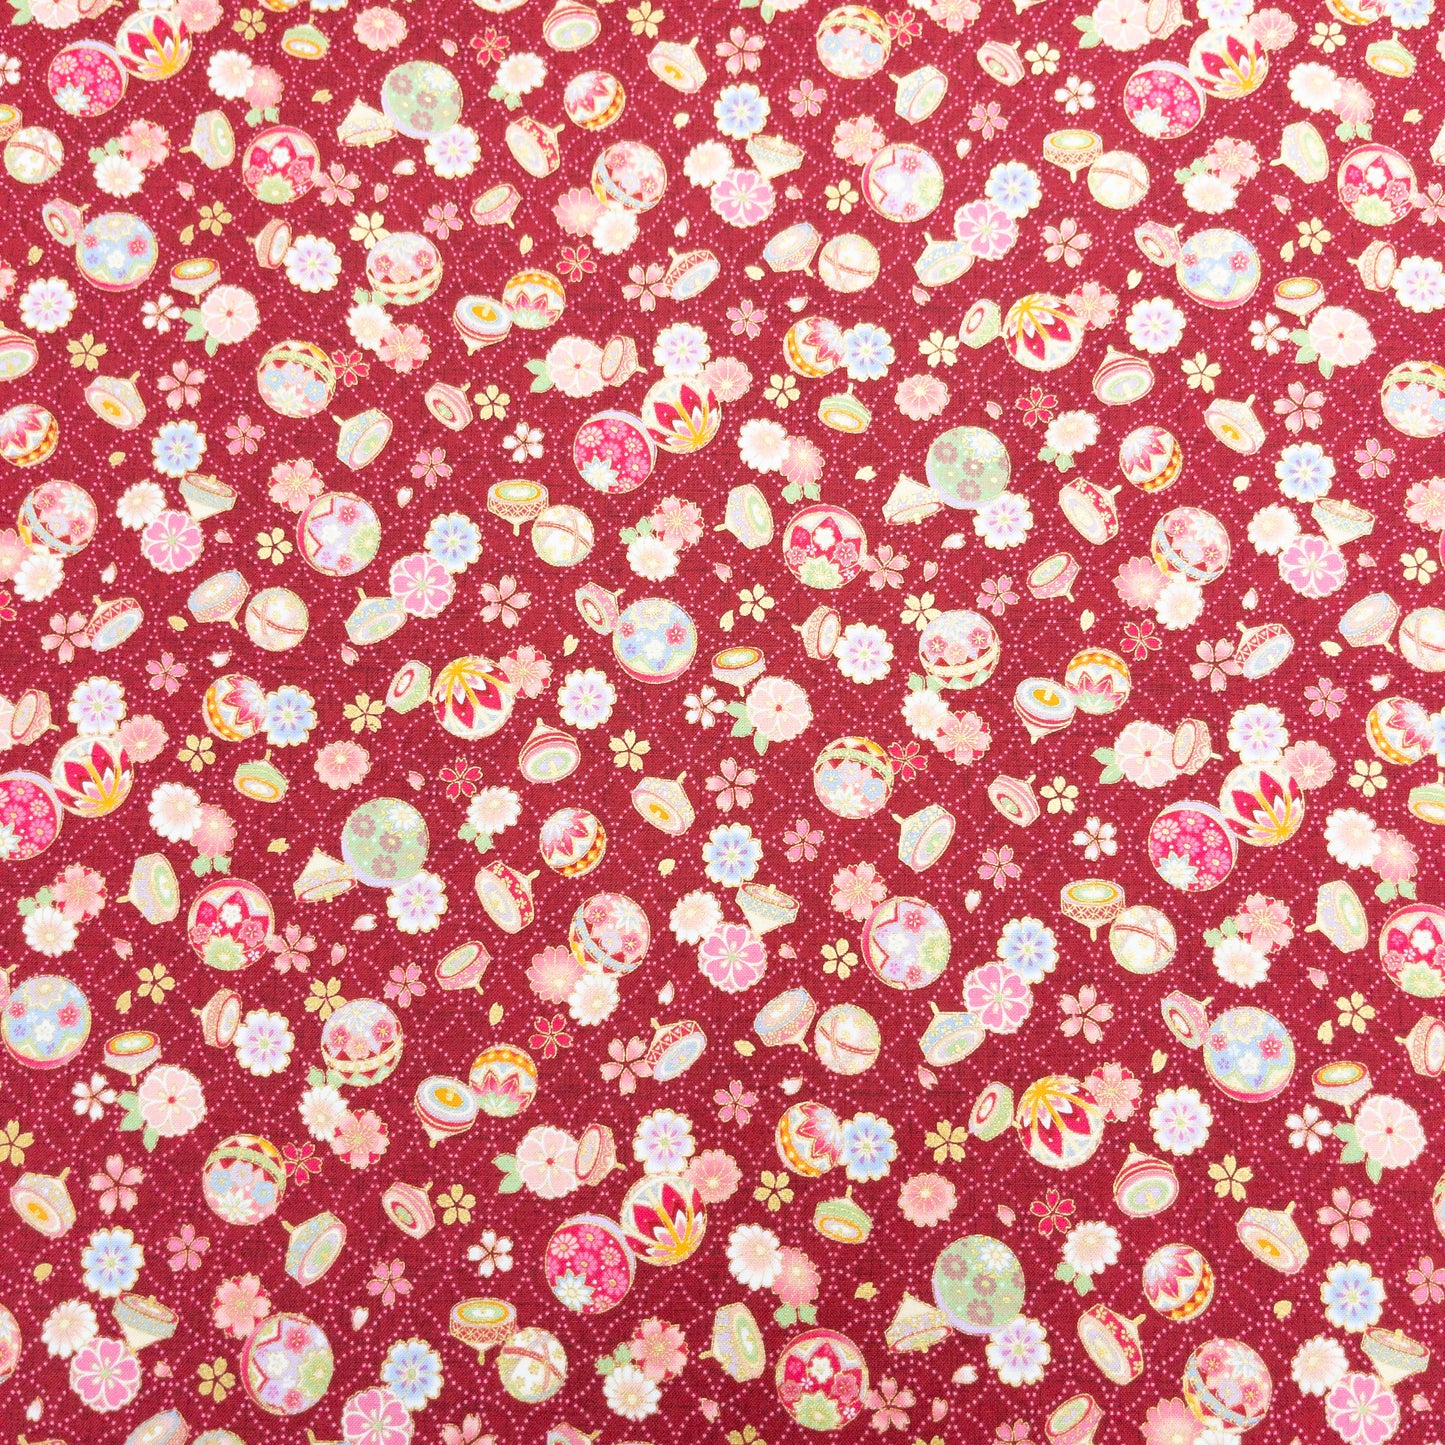 Japan | bronzing japanese pattern 燙金和風圖案 | cotton printed sheeting 純棉